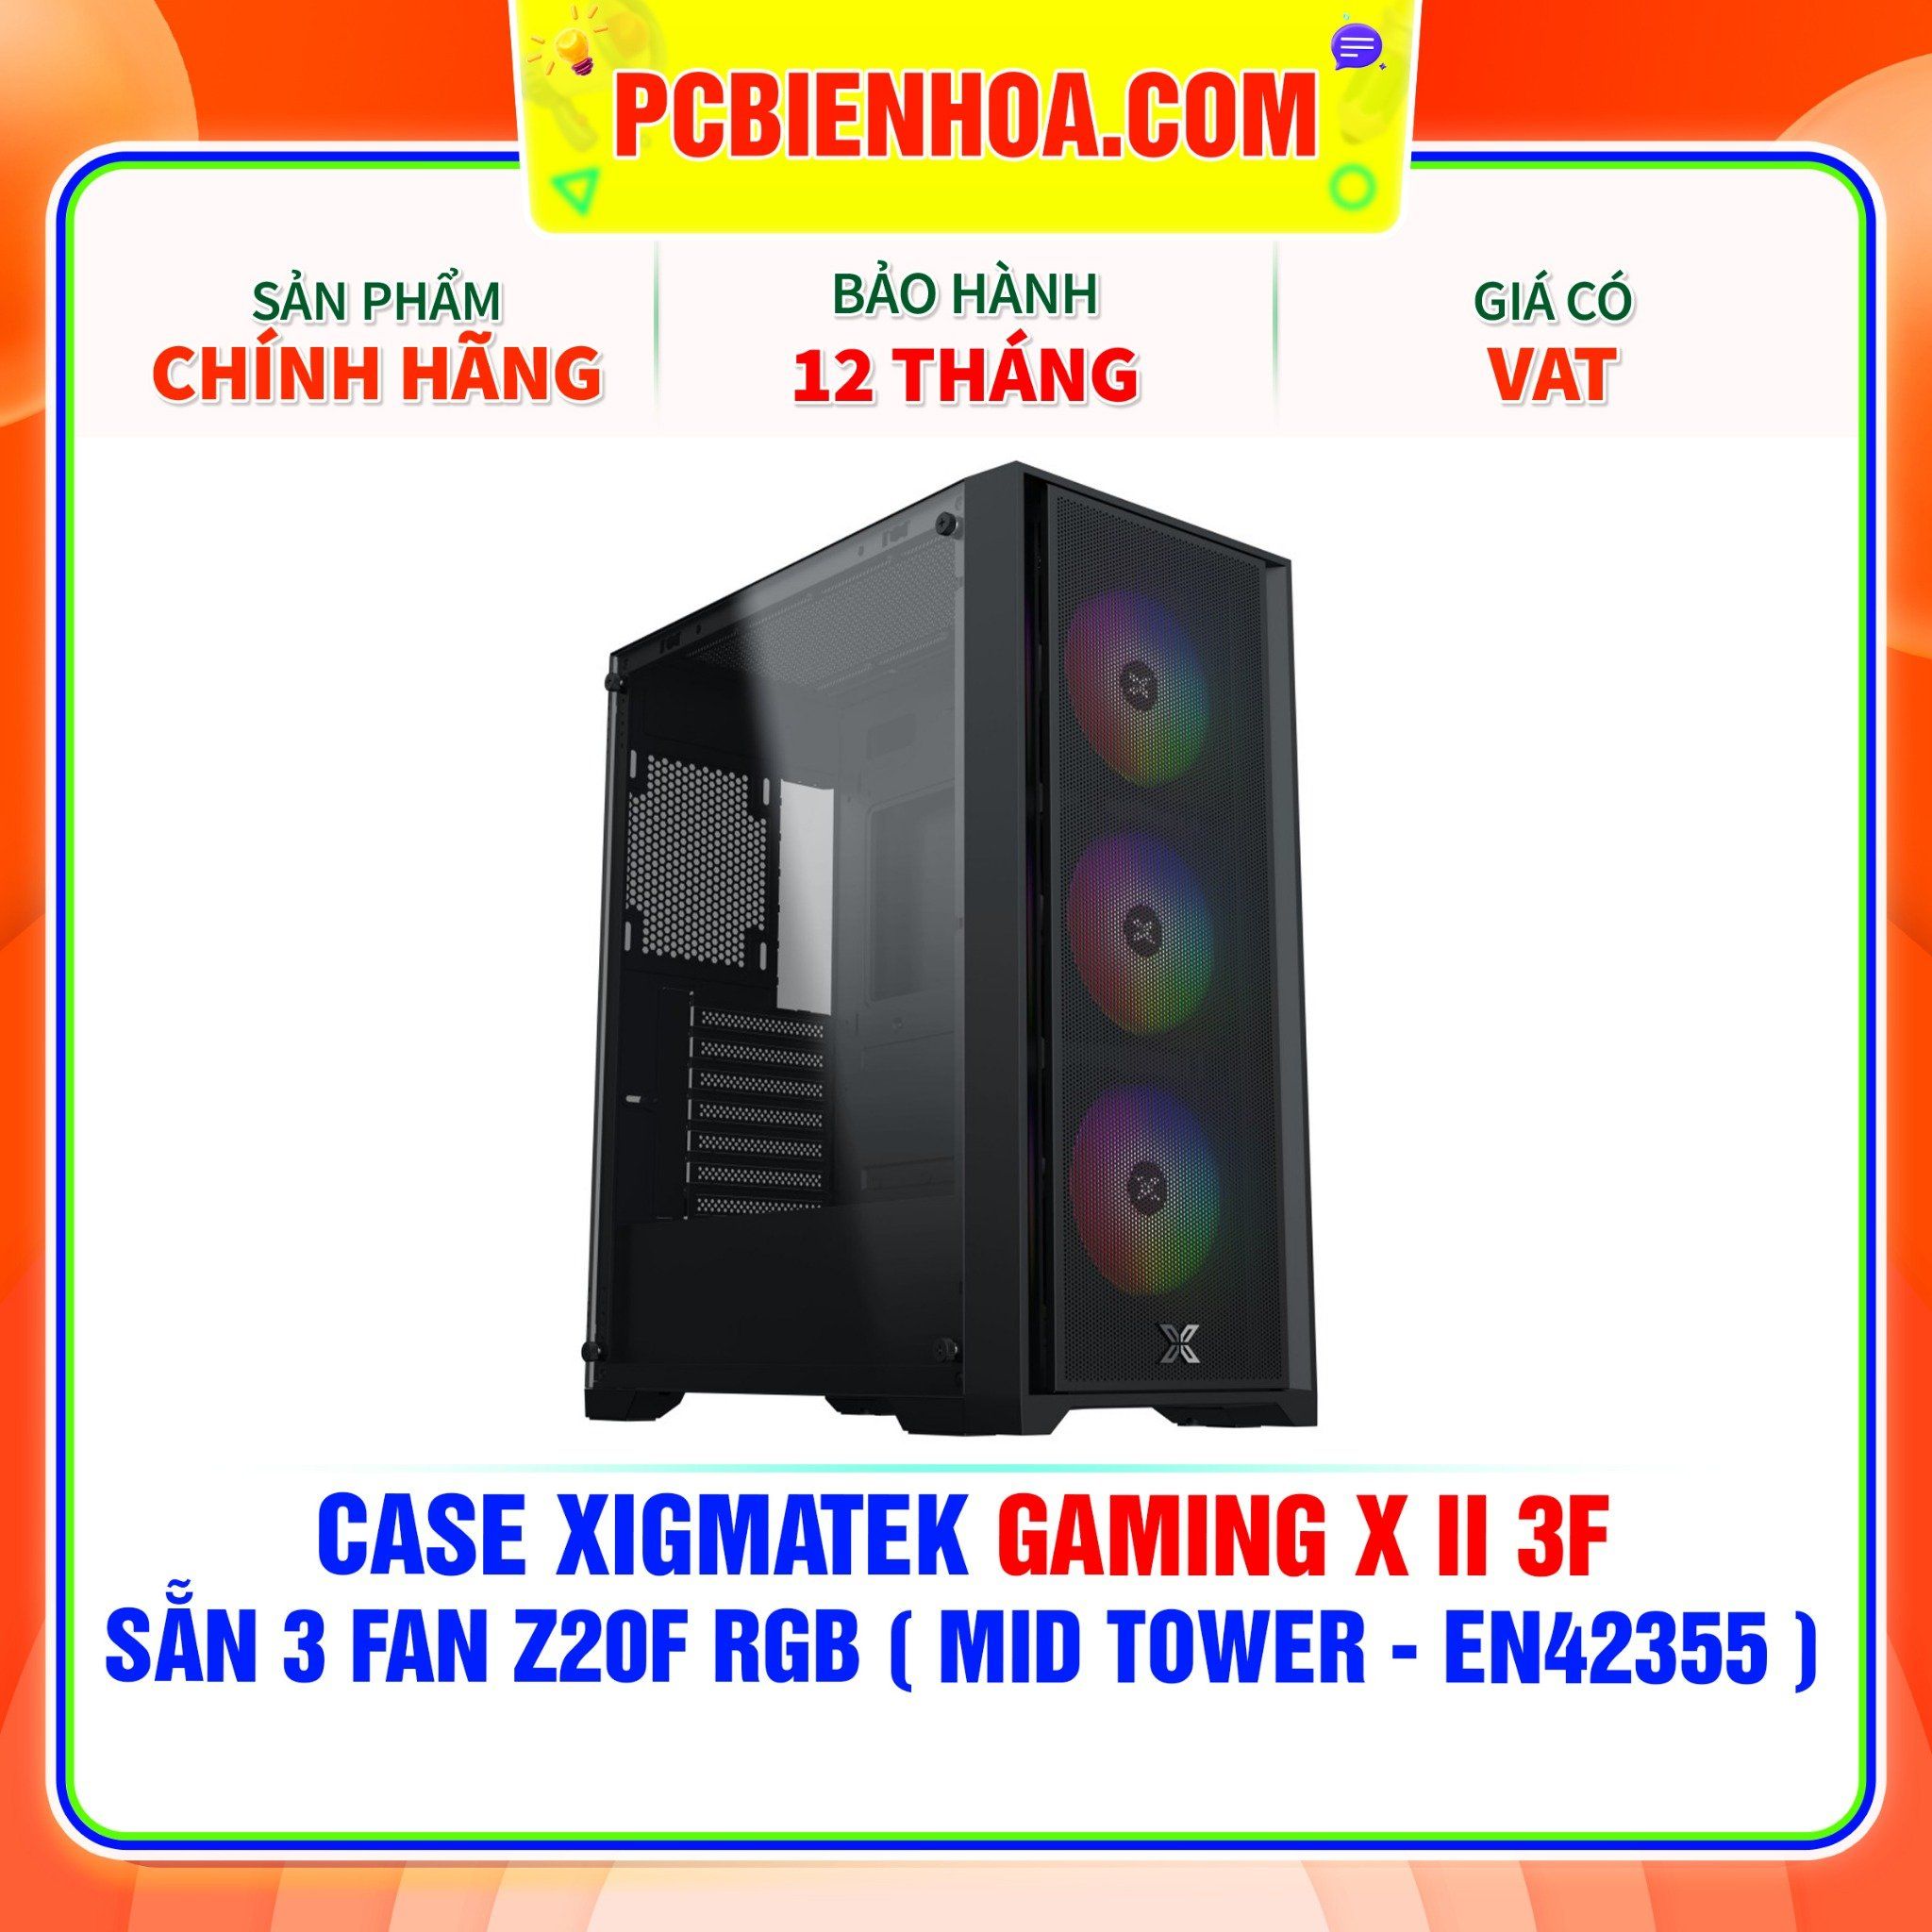  CASE XIGMATEK GAMING X II 3F - SẴN 3 FAN Z20F RGB ( MID TOWER - EN42355 ) 